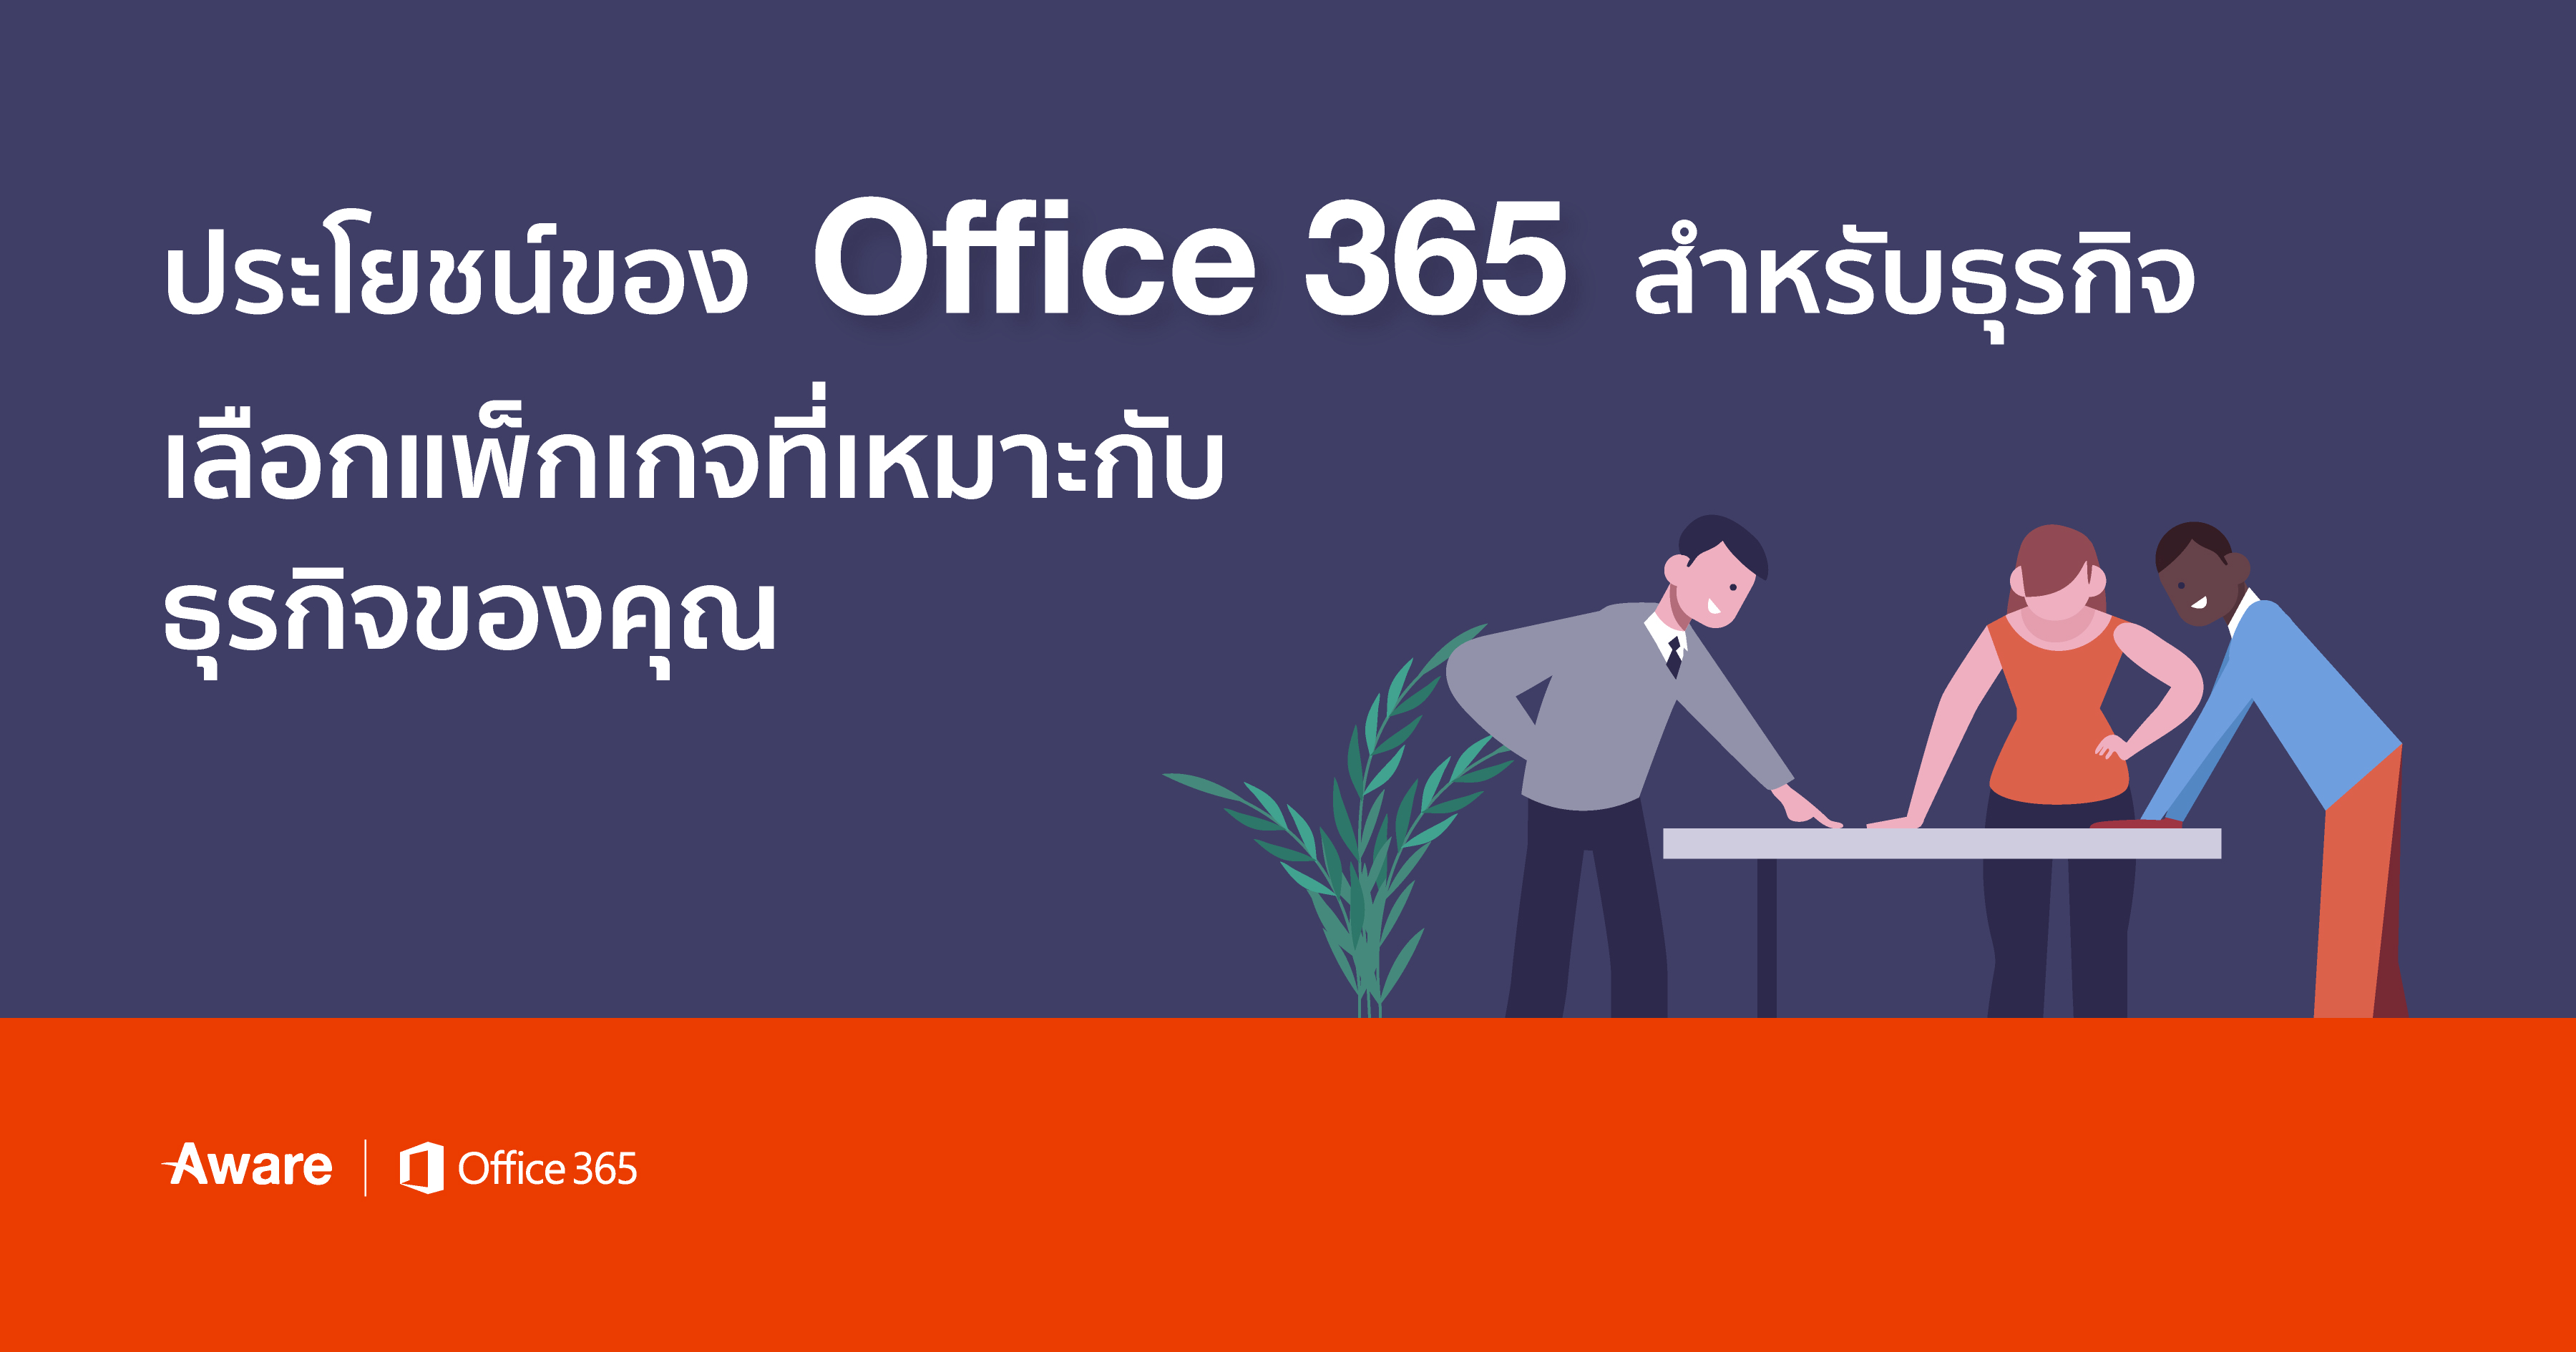 ประโยชน์ของ Office 365 สำหรับธุรกิจ – เลือกแพ็กเกจที่เหมาะกับธุรกิจของคุณ